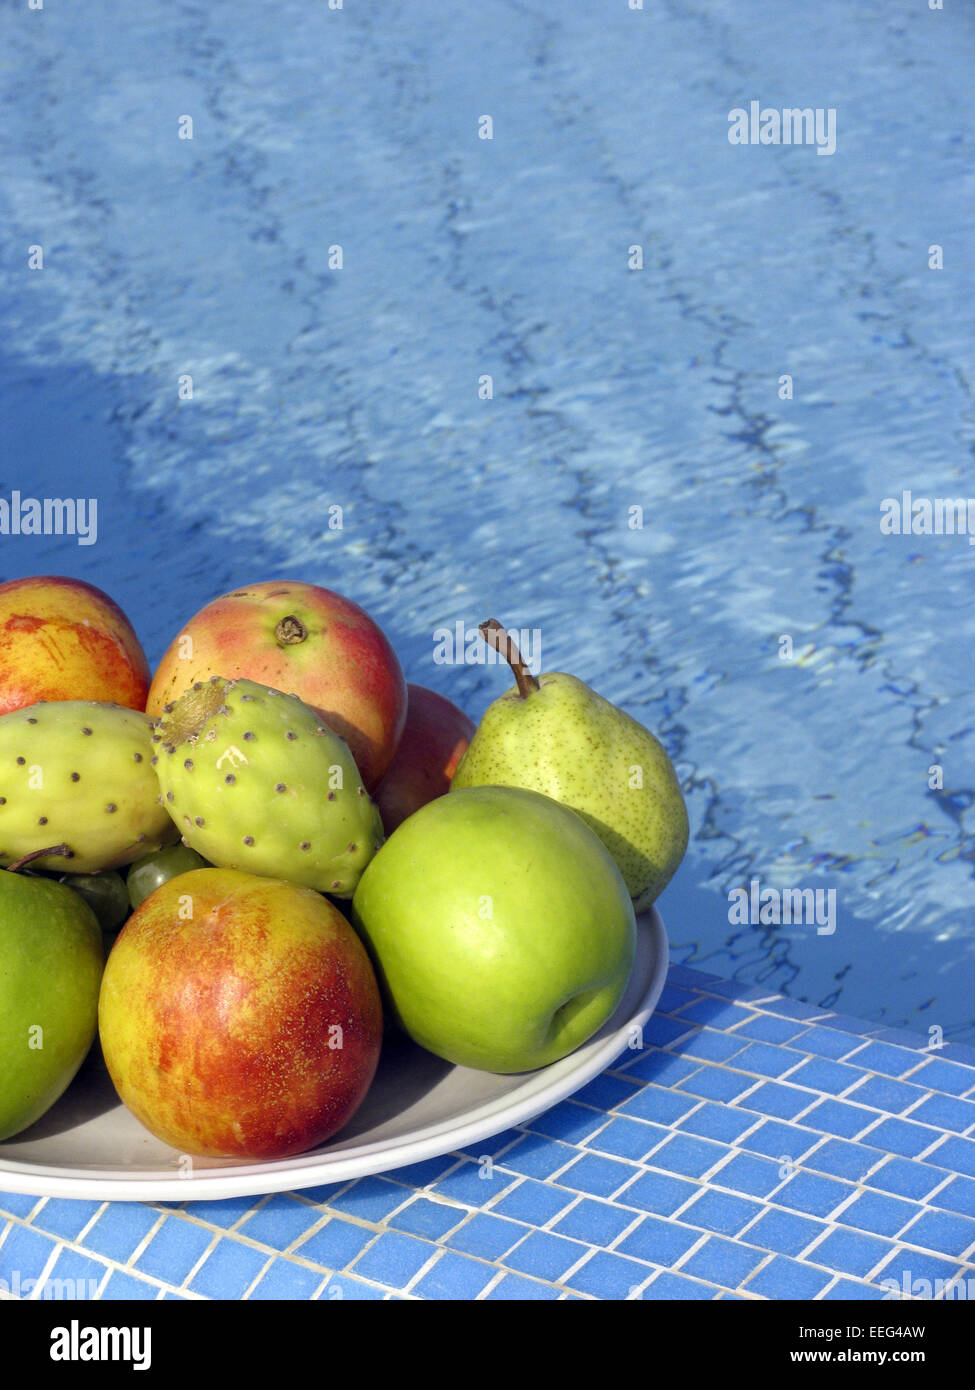 Poolrand Obstschale Pool Swimmingpool Schale Obst Fruechte Feigen Apfel Birne kleinschneiden Ernehrung Gesund Vitaminreich Zwischenma Stockfoto